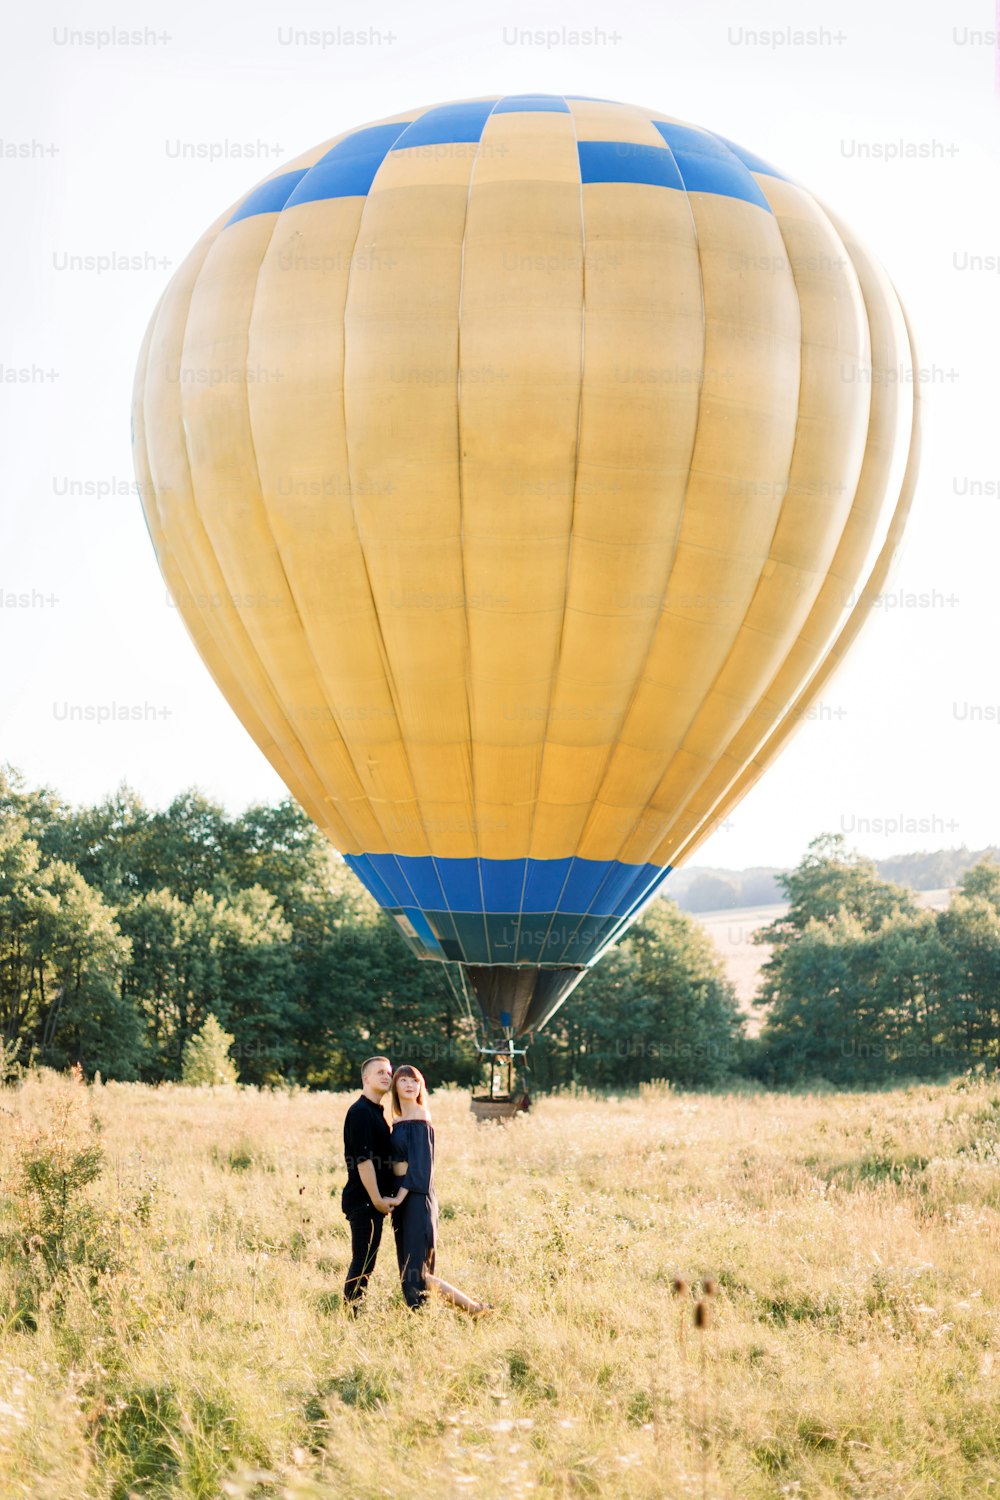 Porträt eines hübschen jungen Paares in Schwarz, das sich umarmt und den Sommerspaziergang auf dem Feld genießt und auf seine Ballontour wartet. Gelber Luftballon im Hintergrund.